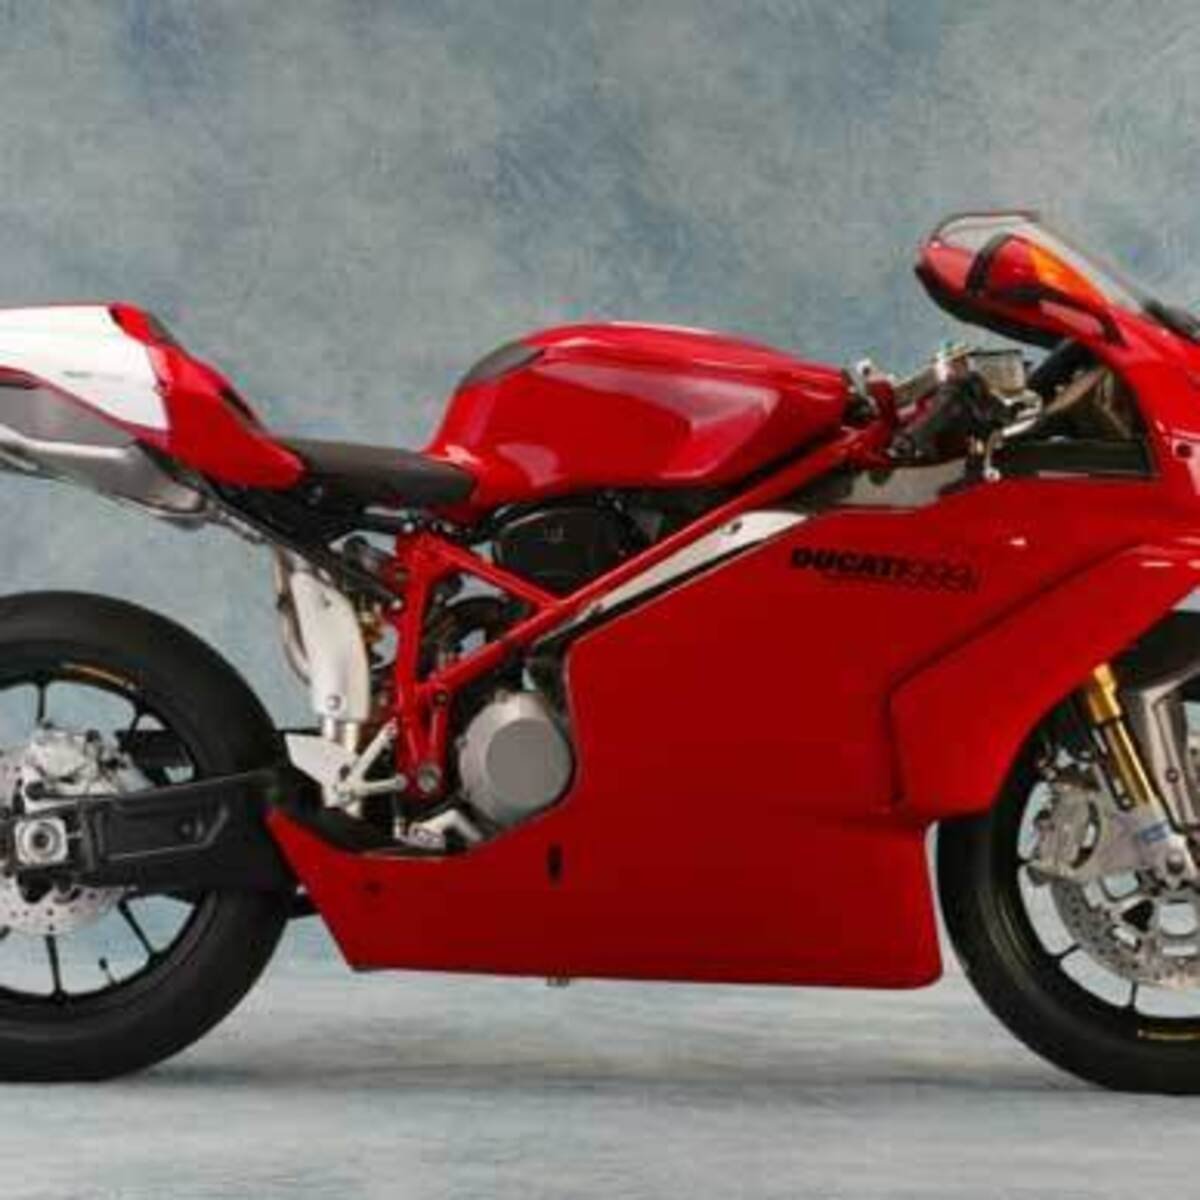 Ducati 749 R (2003 - 07)